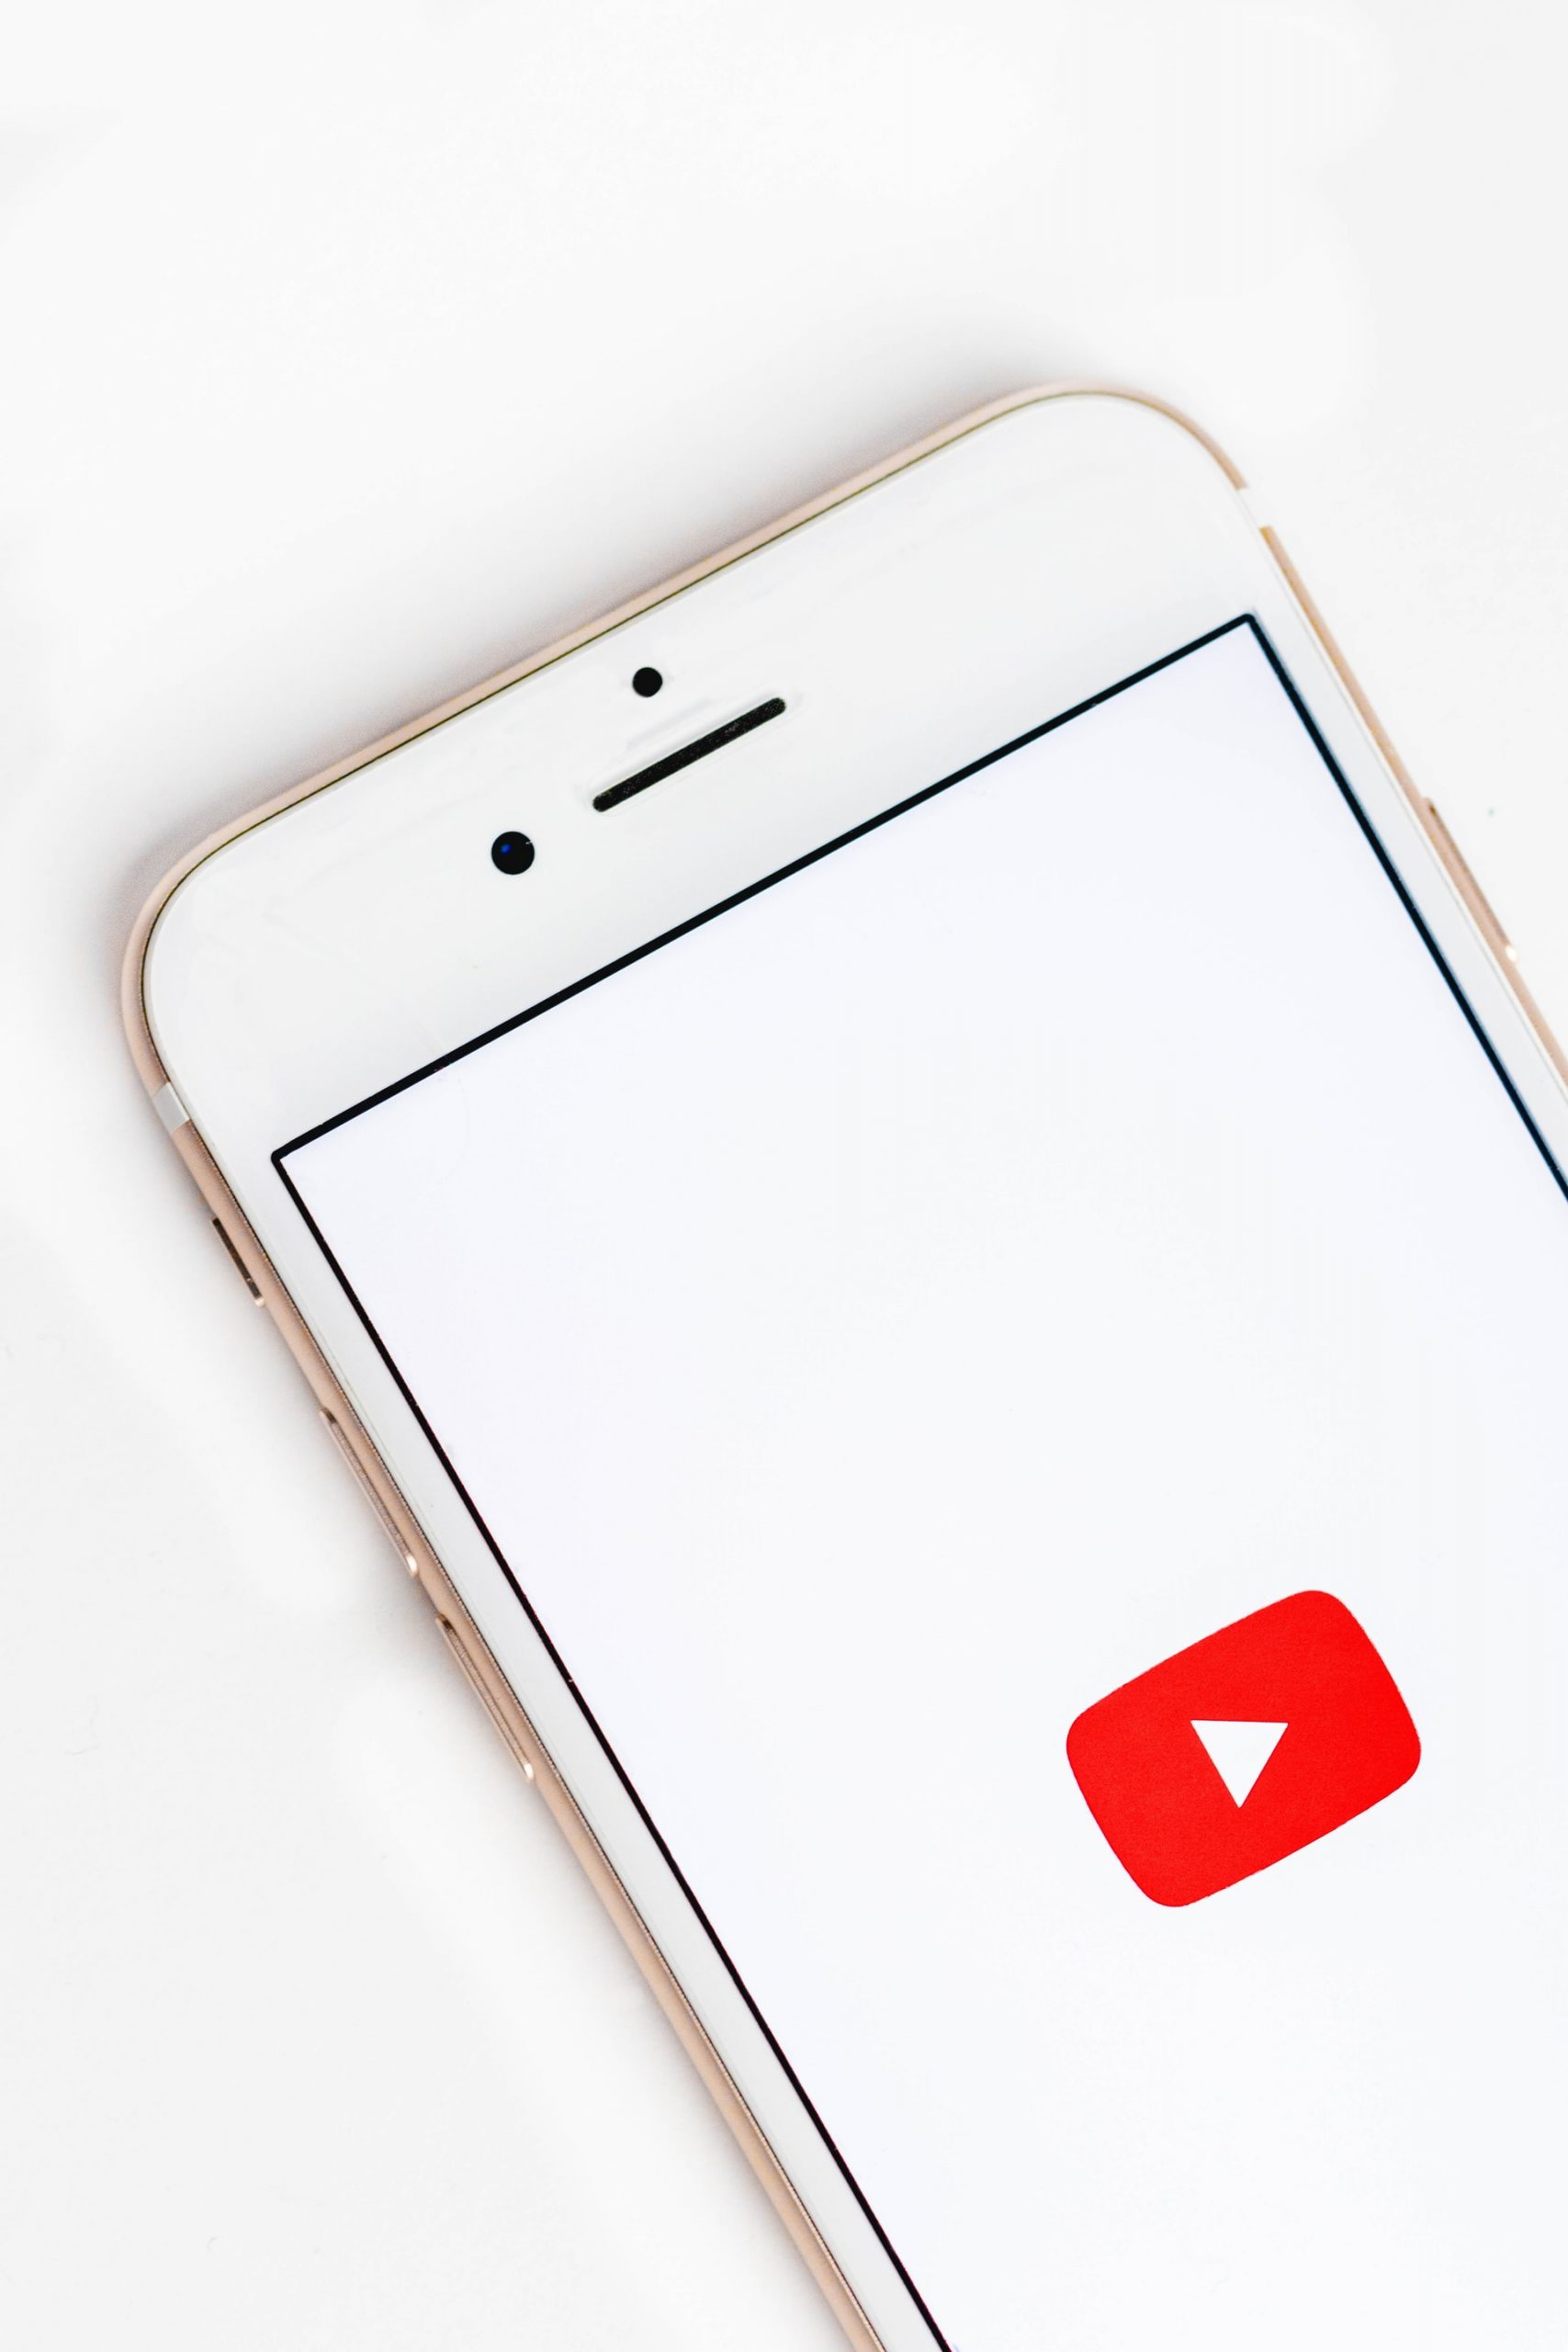 YouTube Premium – jak działa i ile kosztuje?